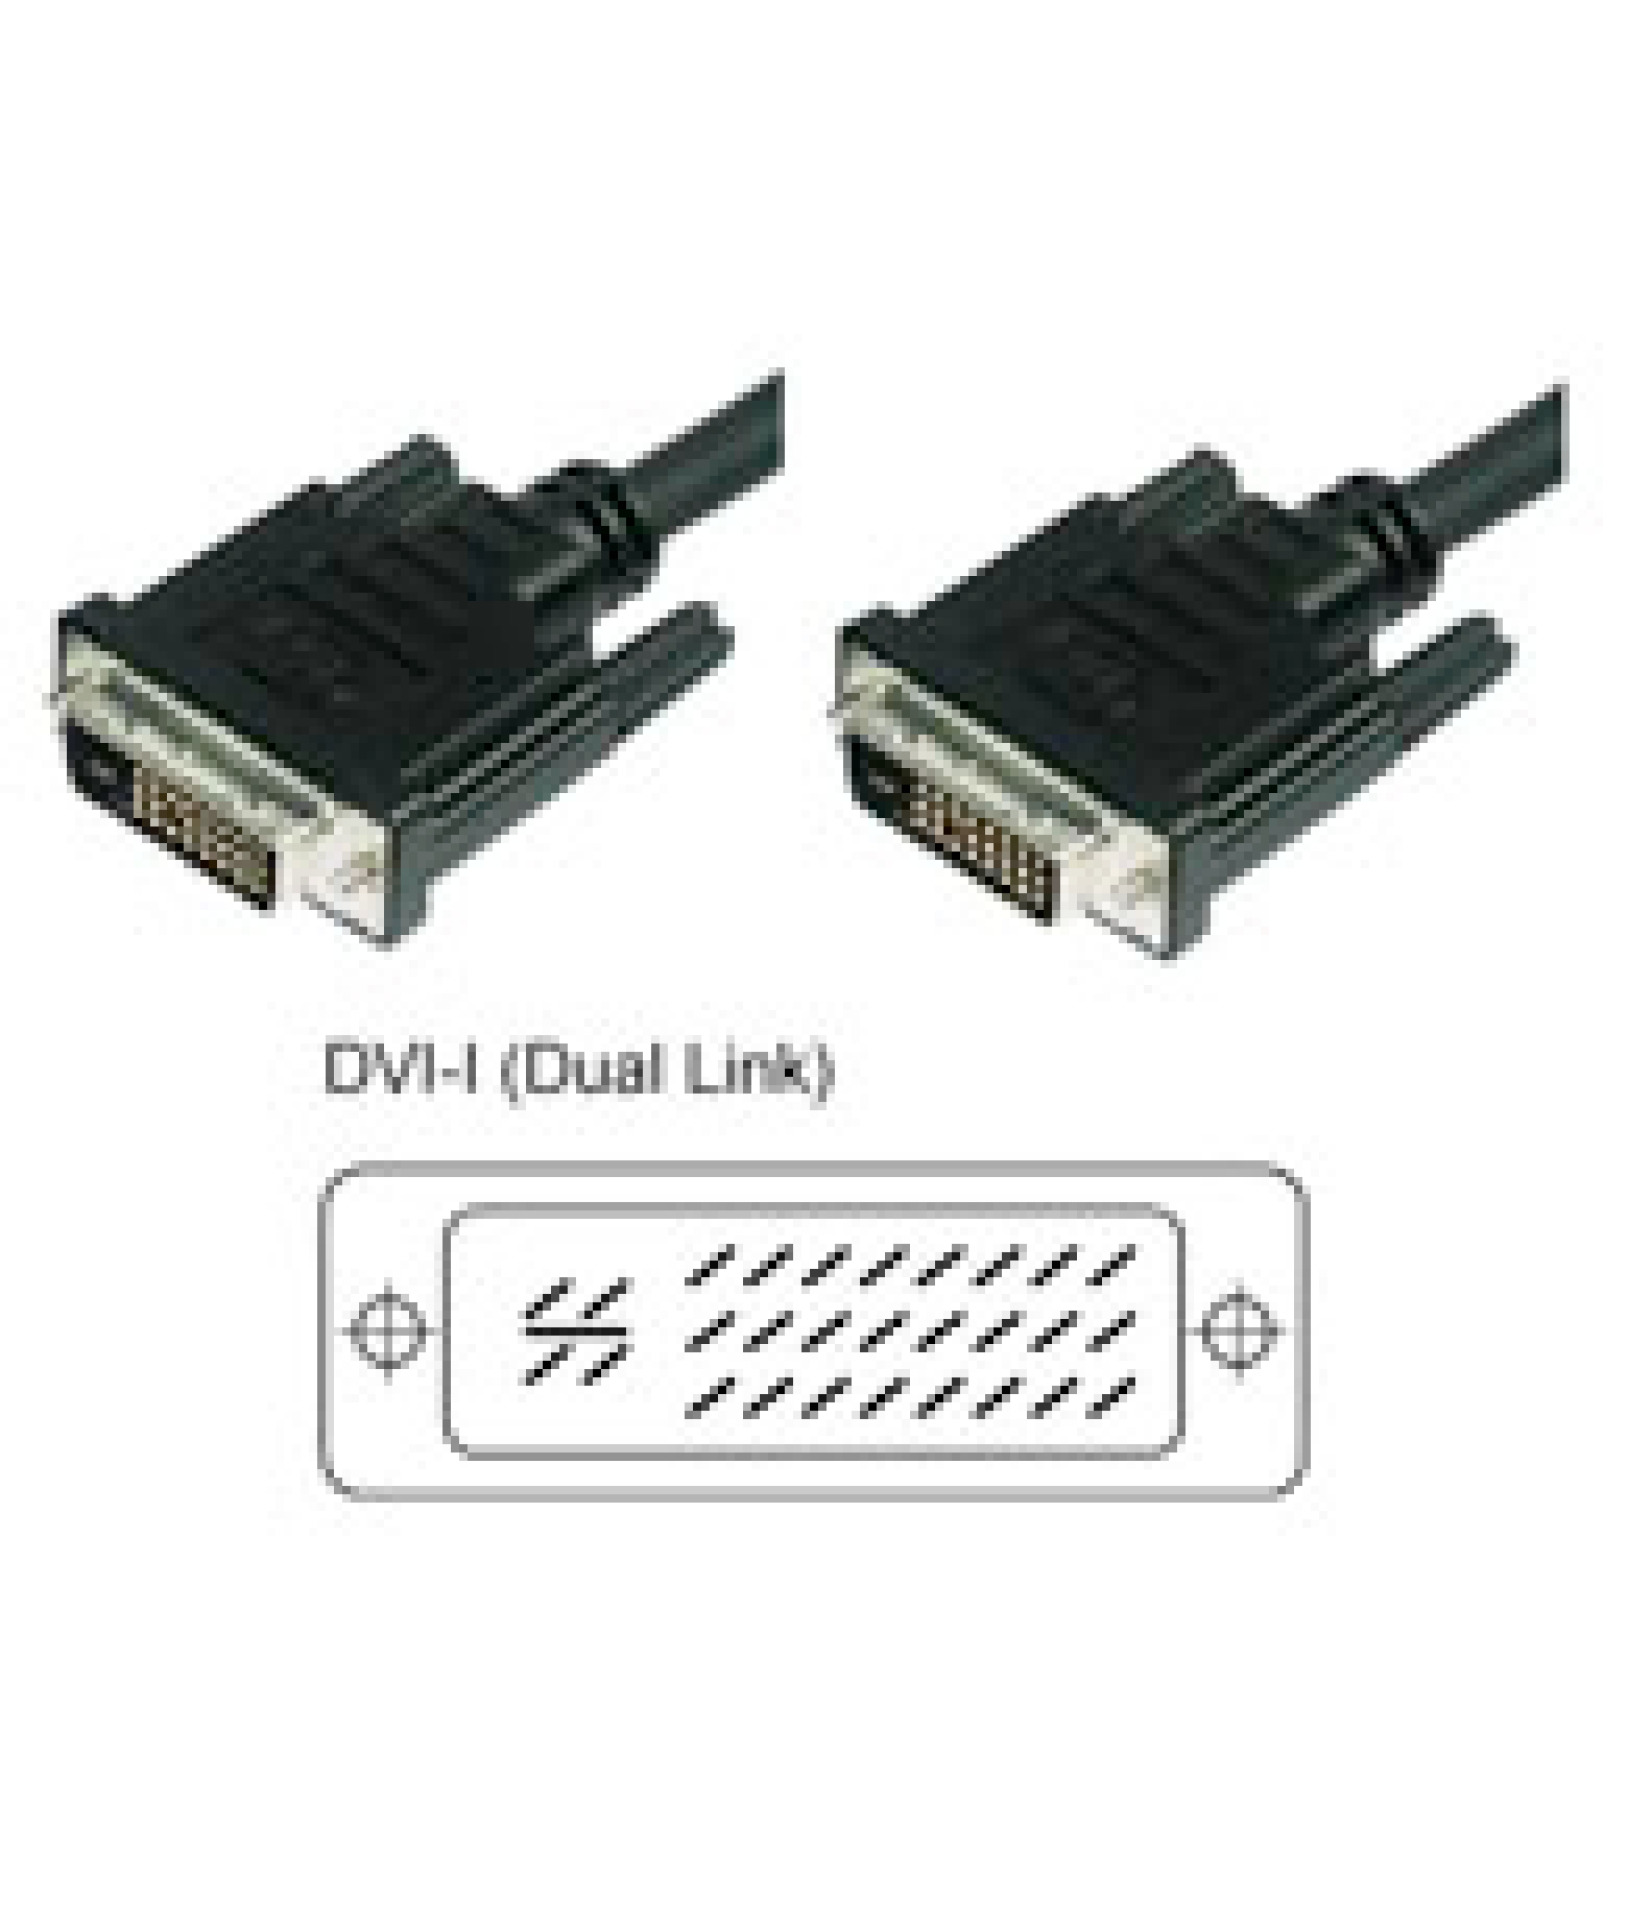 DVI-I 24+5 Dual Link, Anschlusskabel Stecker/Stecker, Analog / Digital, 1,8m